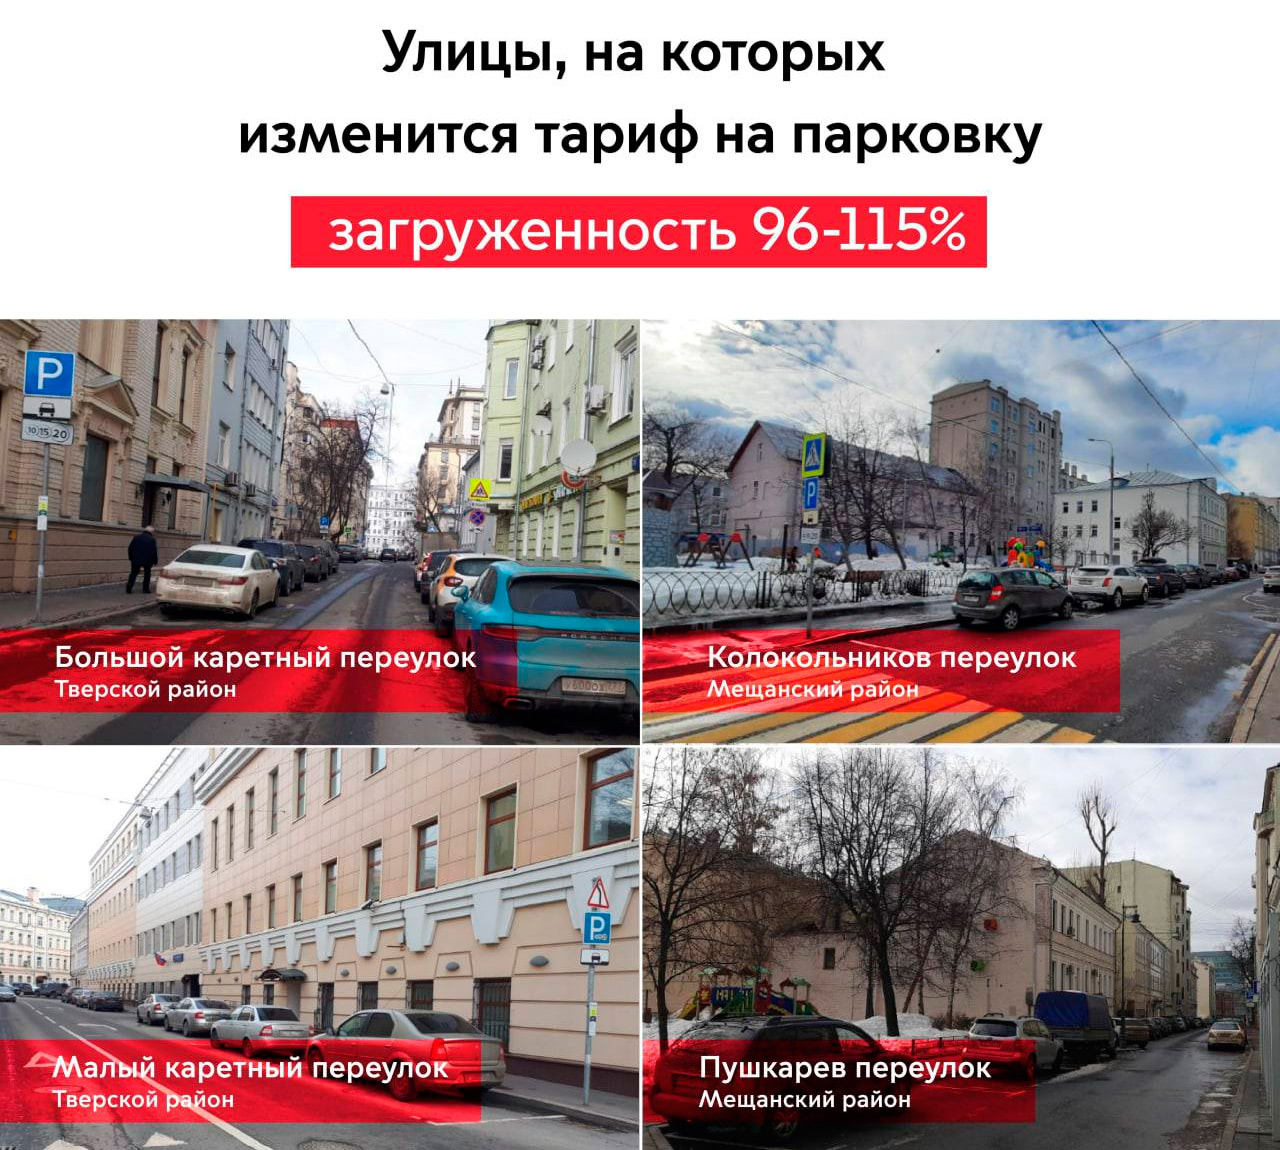 Новые правила парковки в Москве: цены, улицы и все нюансы